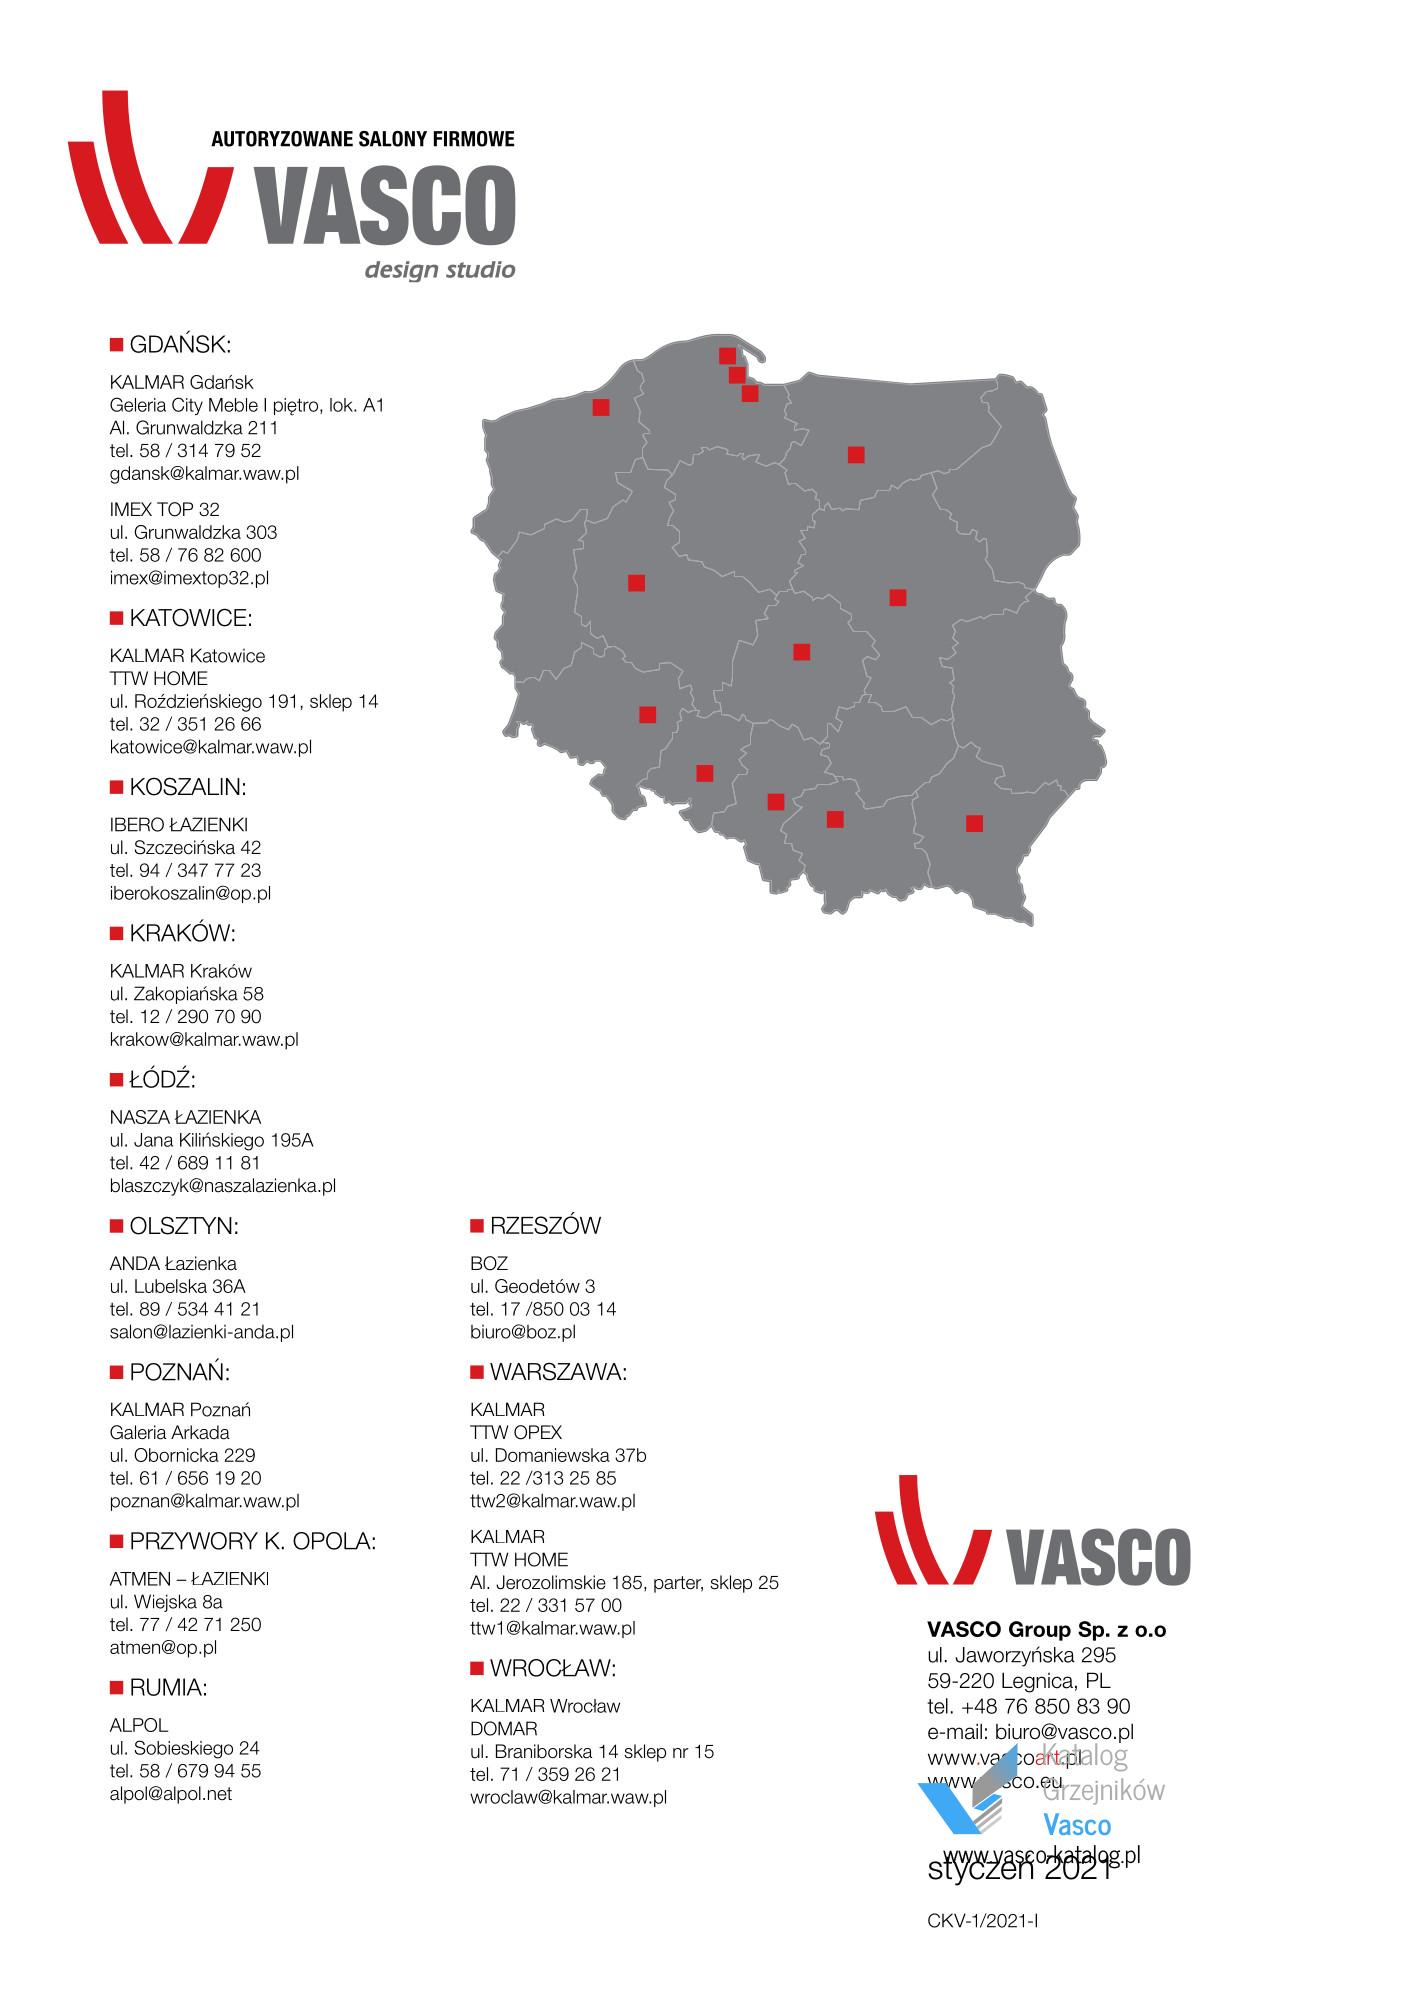 Katalog Vasco 2021 - Autoryzowane salony firmowe Vasco